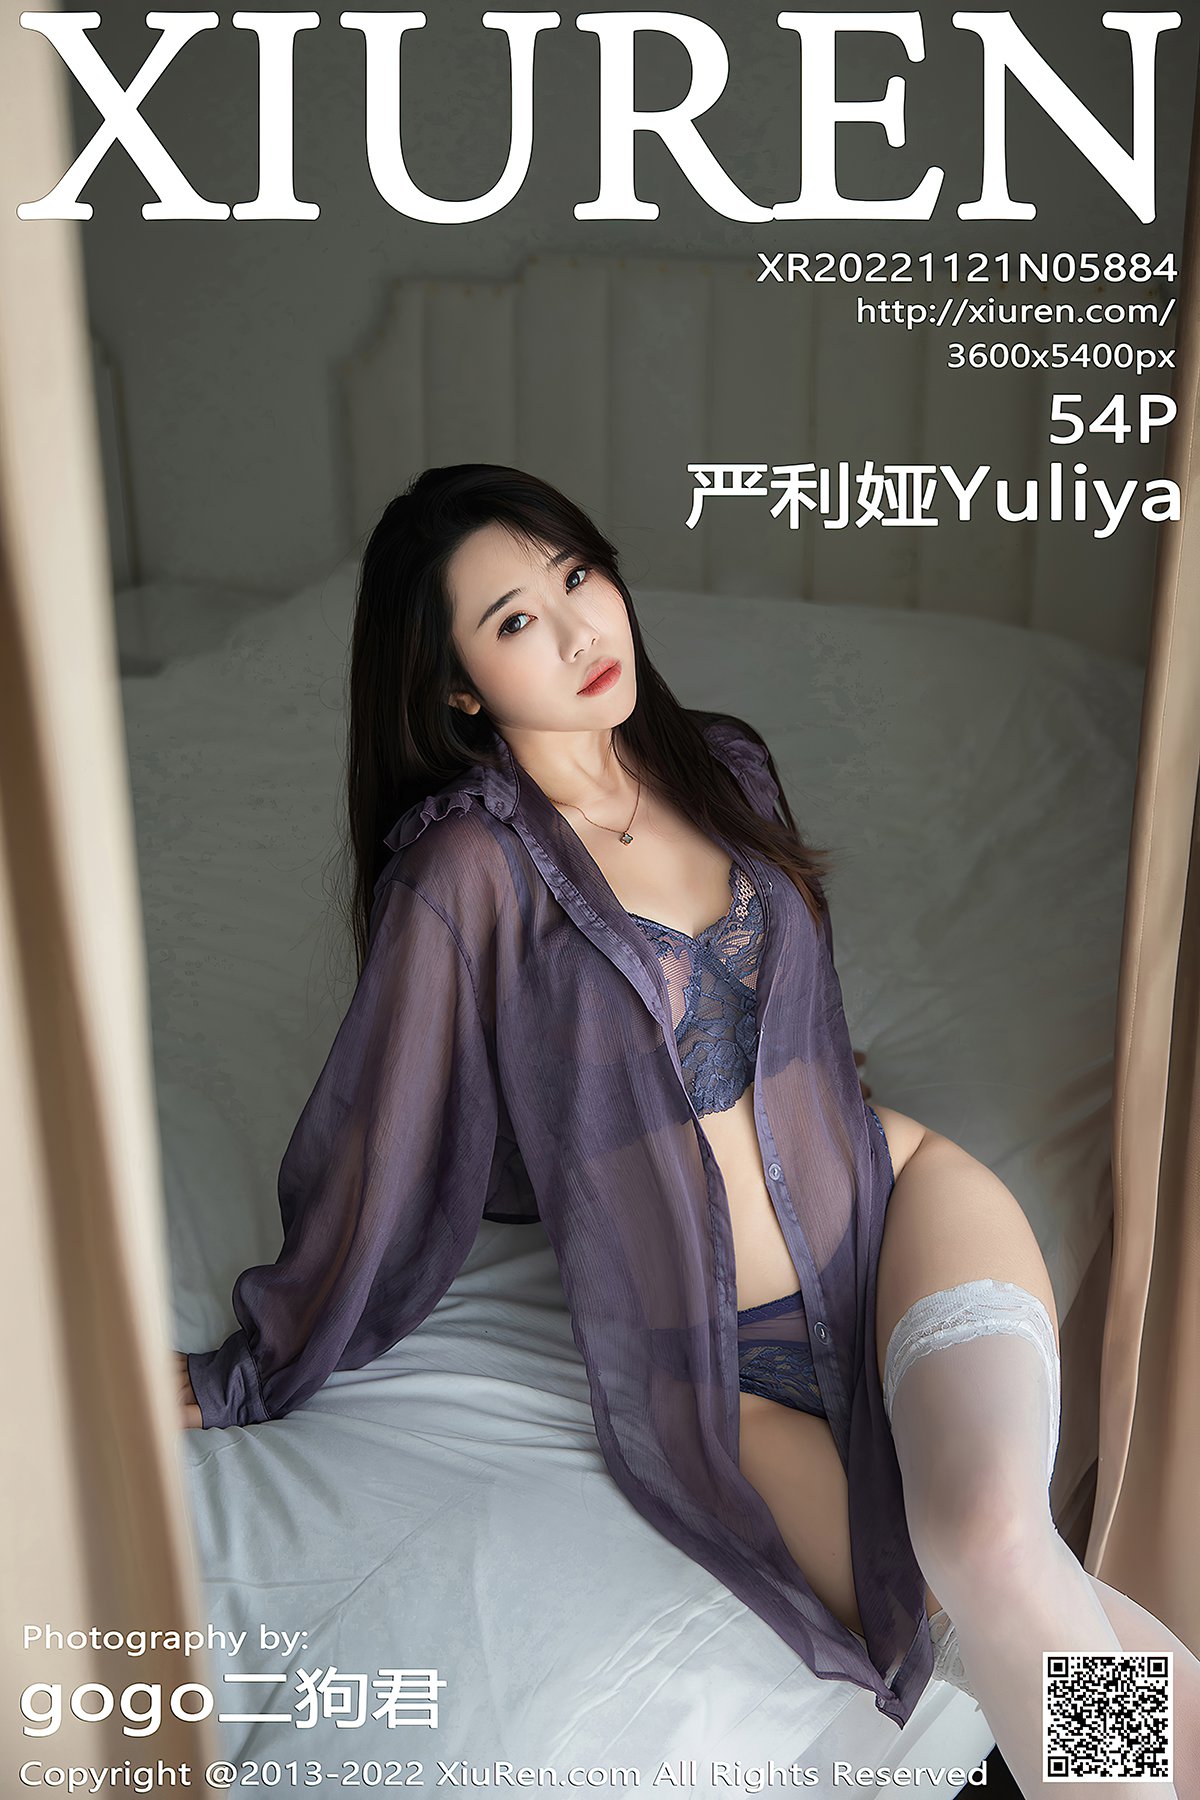 [XIUREN] No.5884 严利娅Yuliya Cover Photo